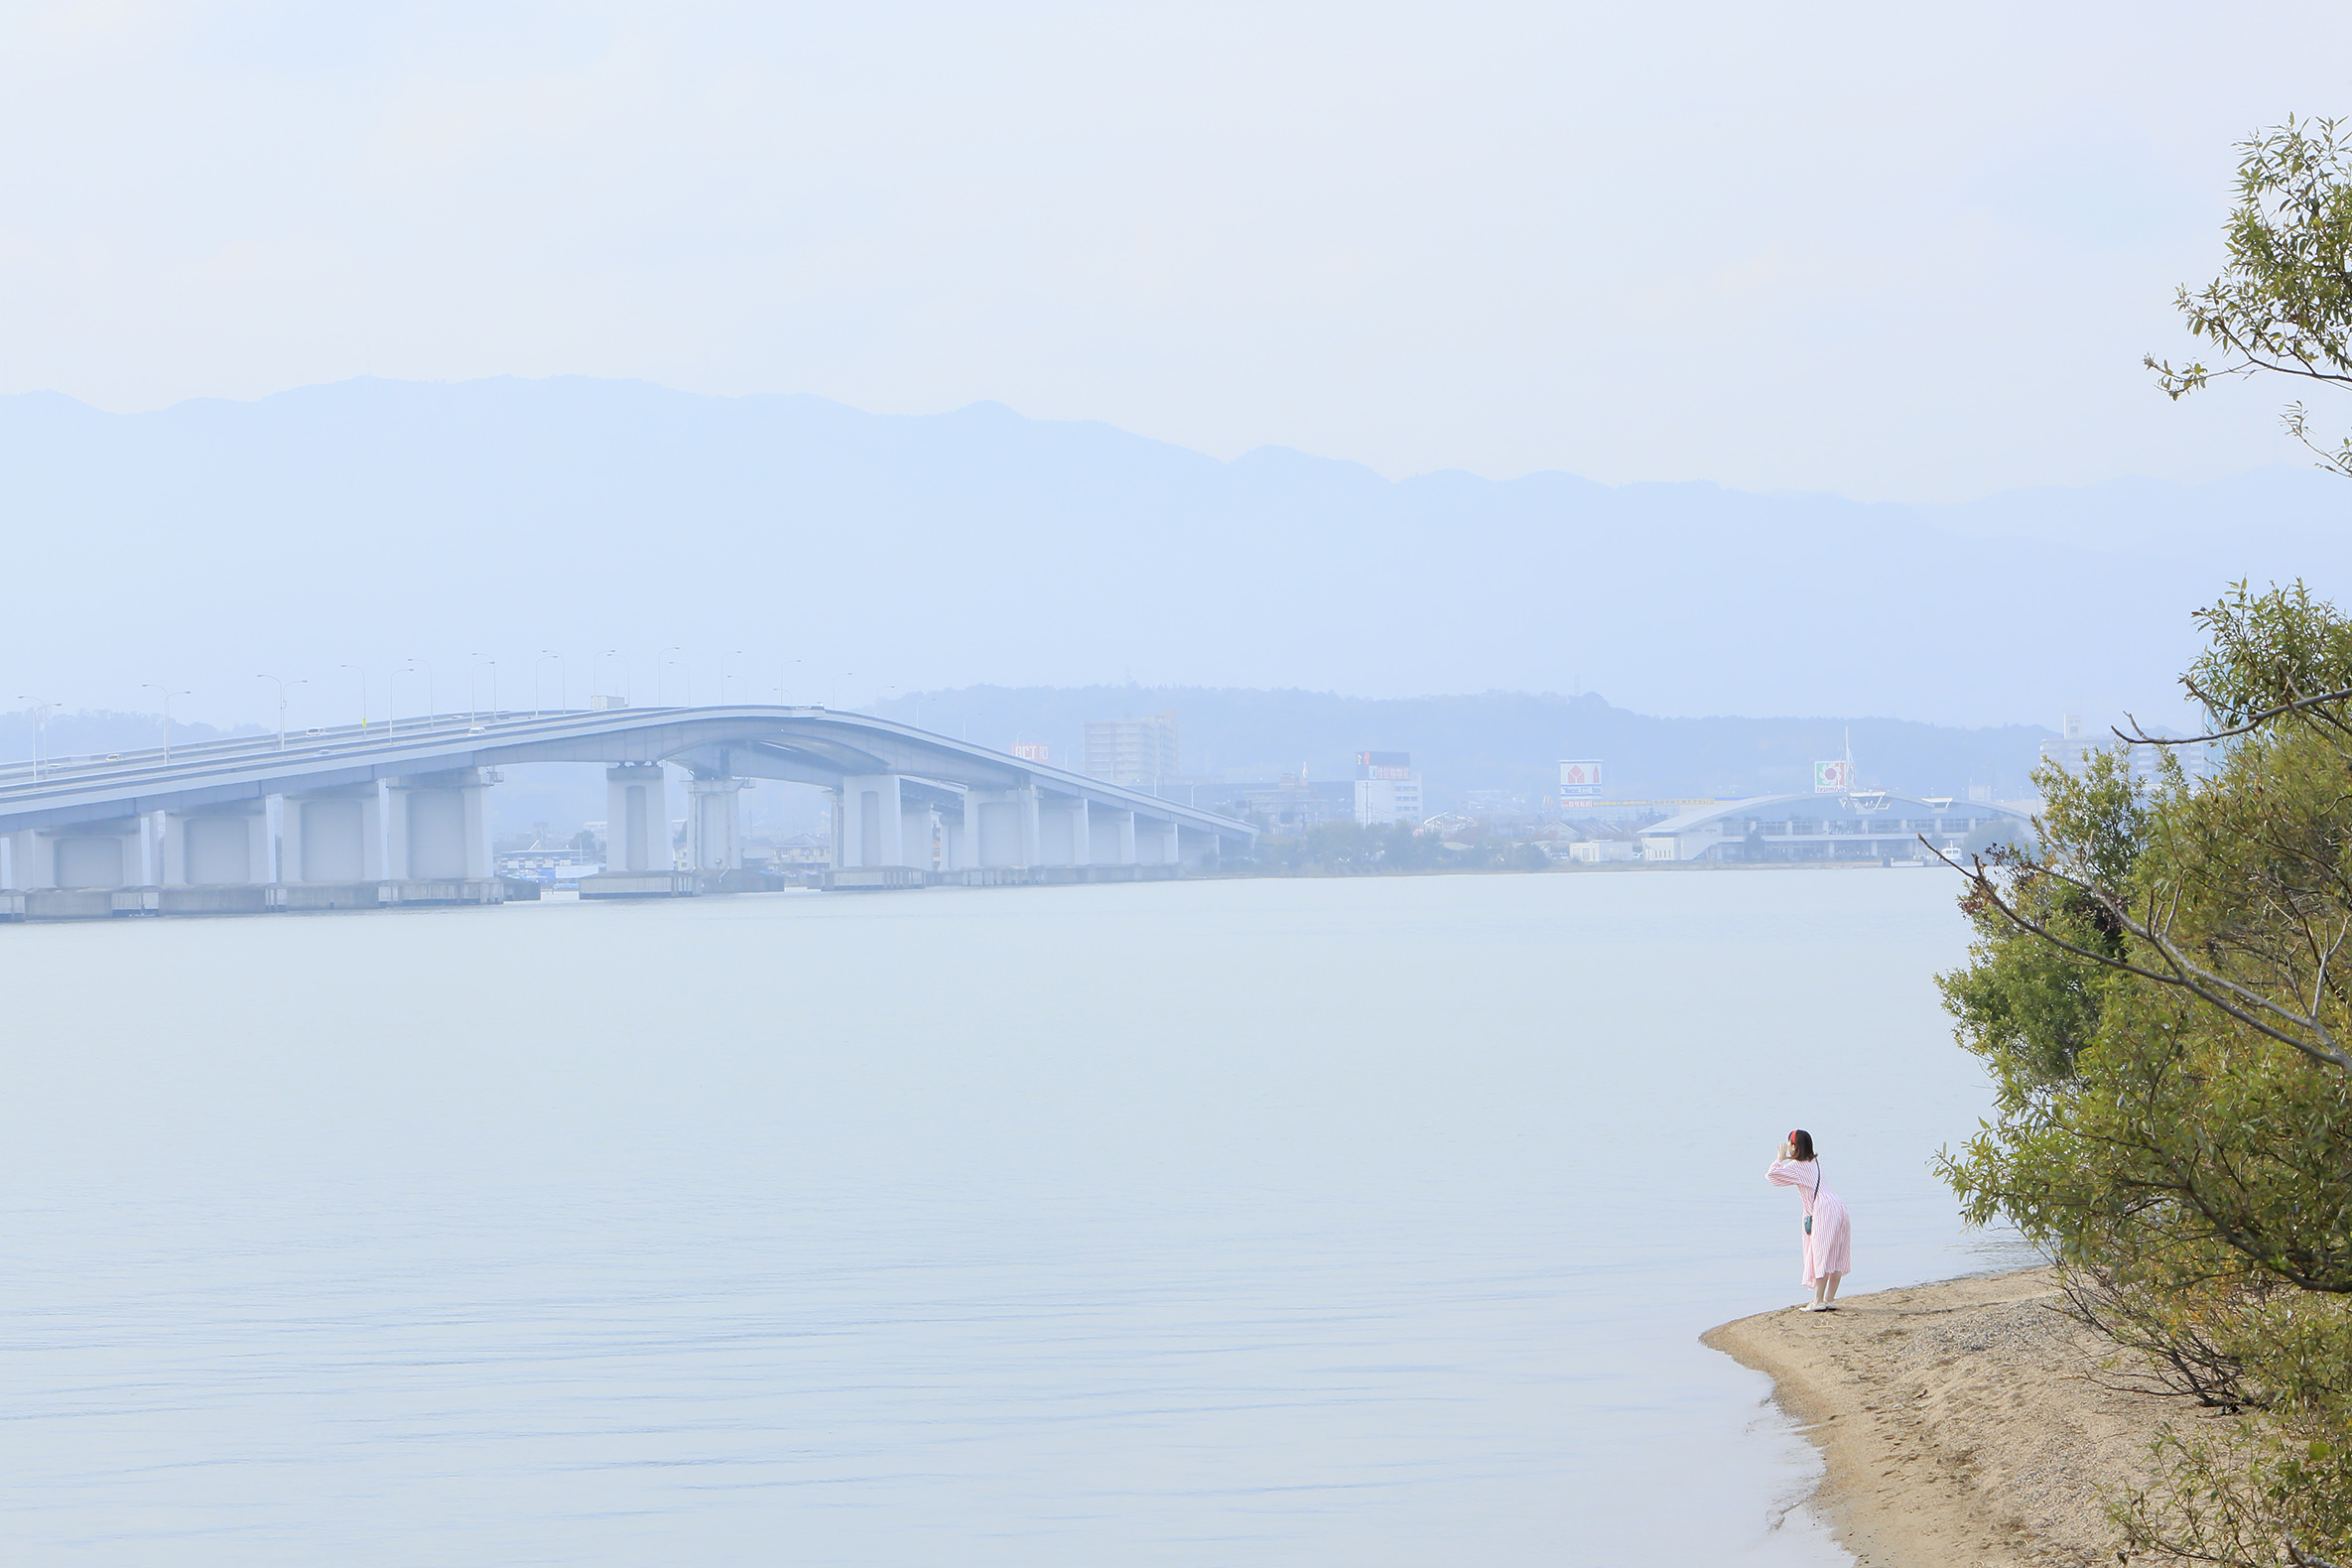 思っていることは、大きな声で伝えたいものです。遠くへ叫ぶと心もスッキリ。琵琶湖大橋が受け止めてくれます。